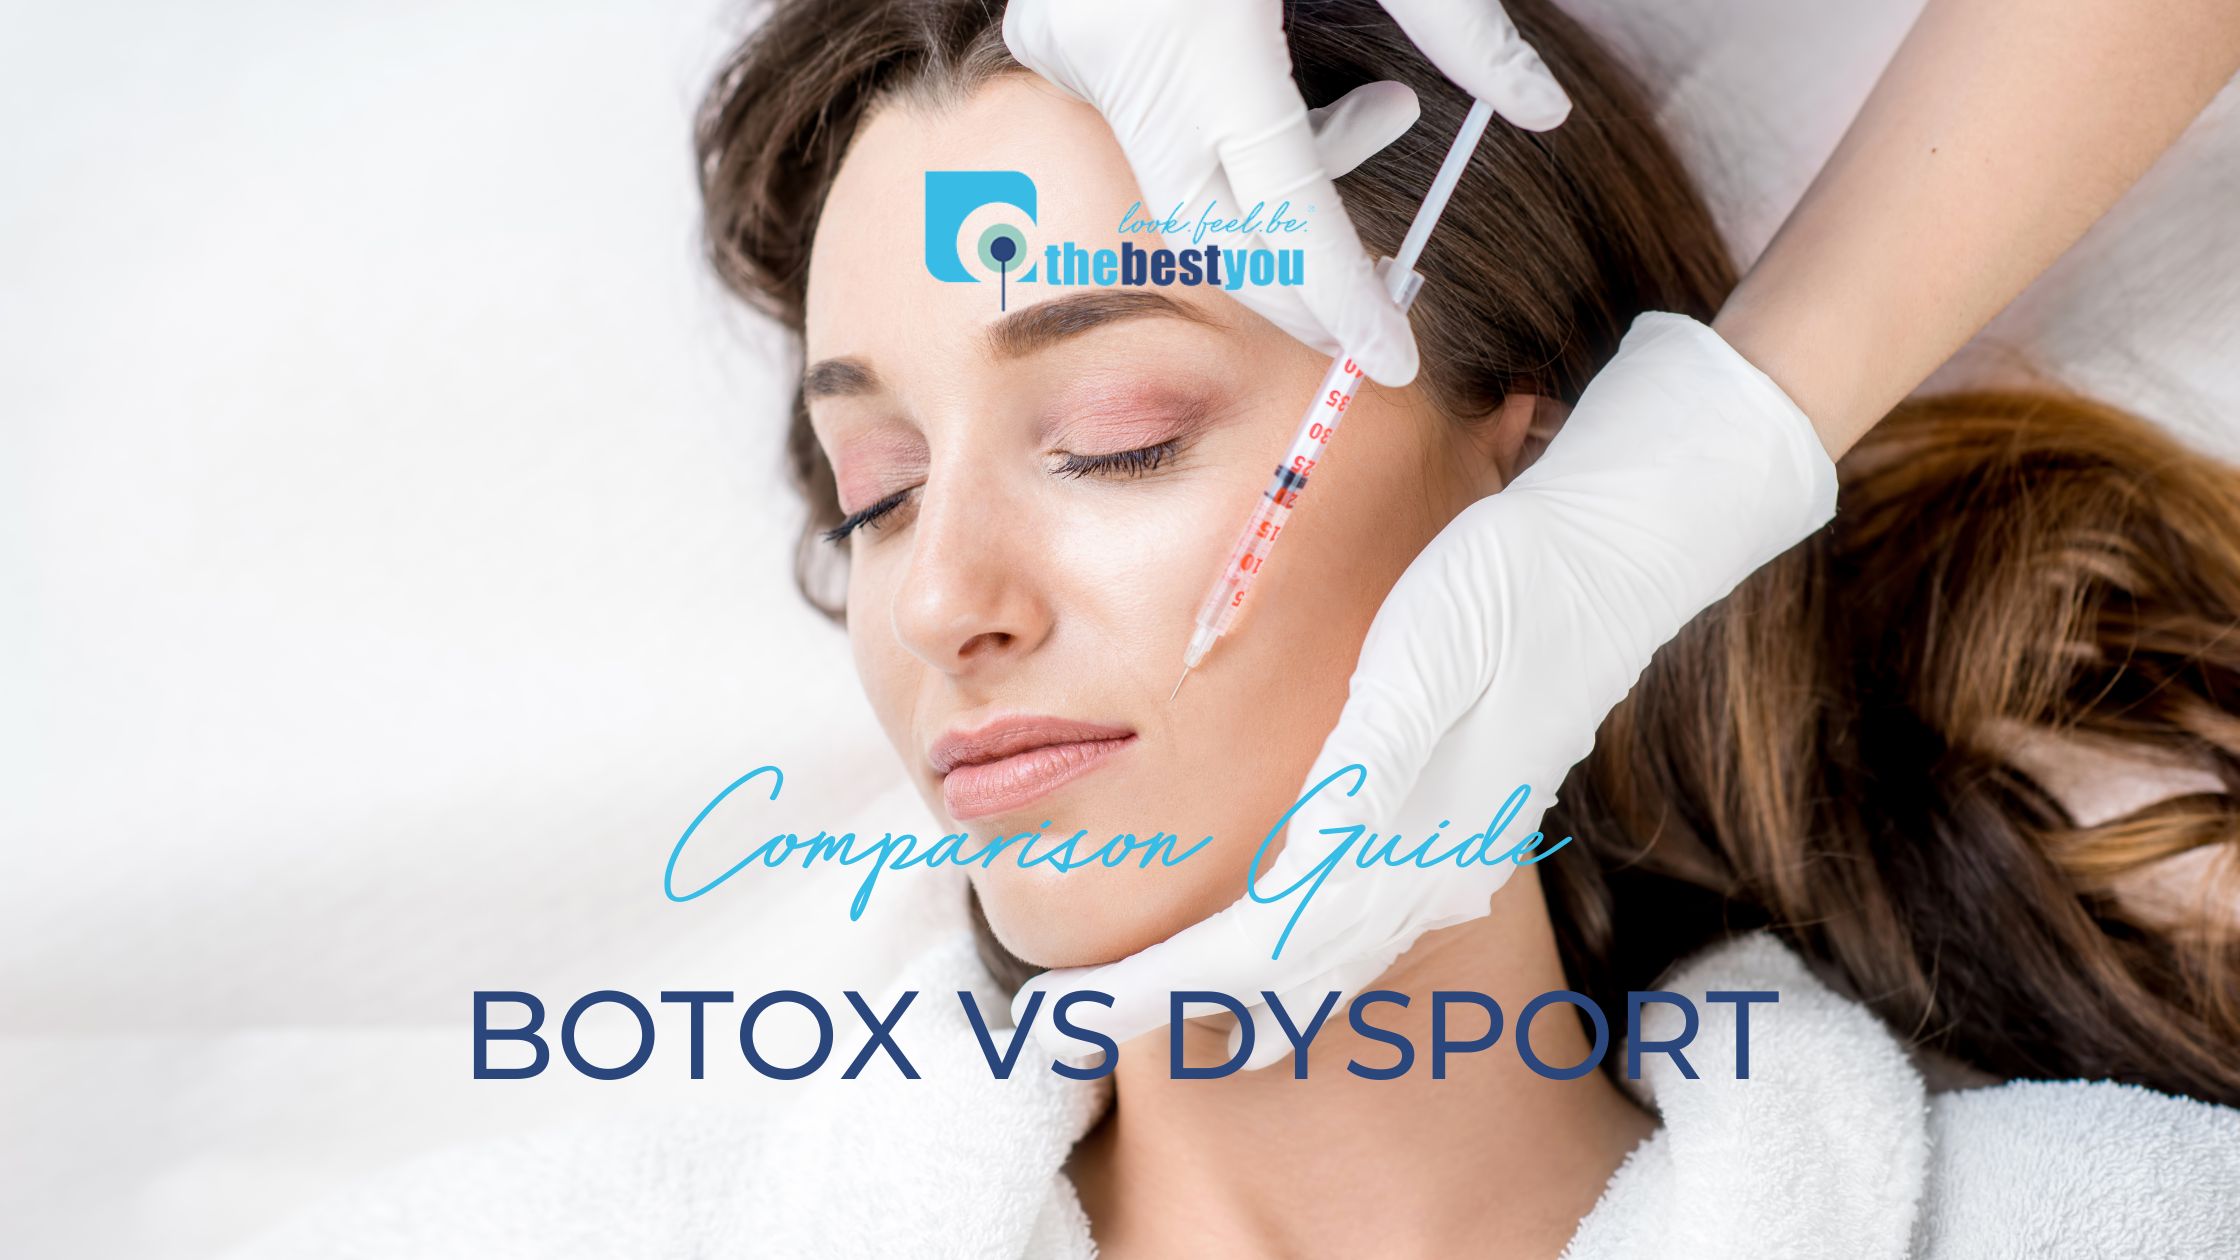 botox vs dysport